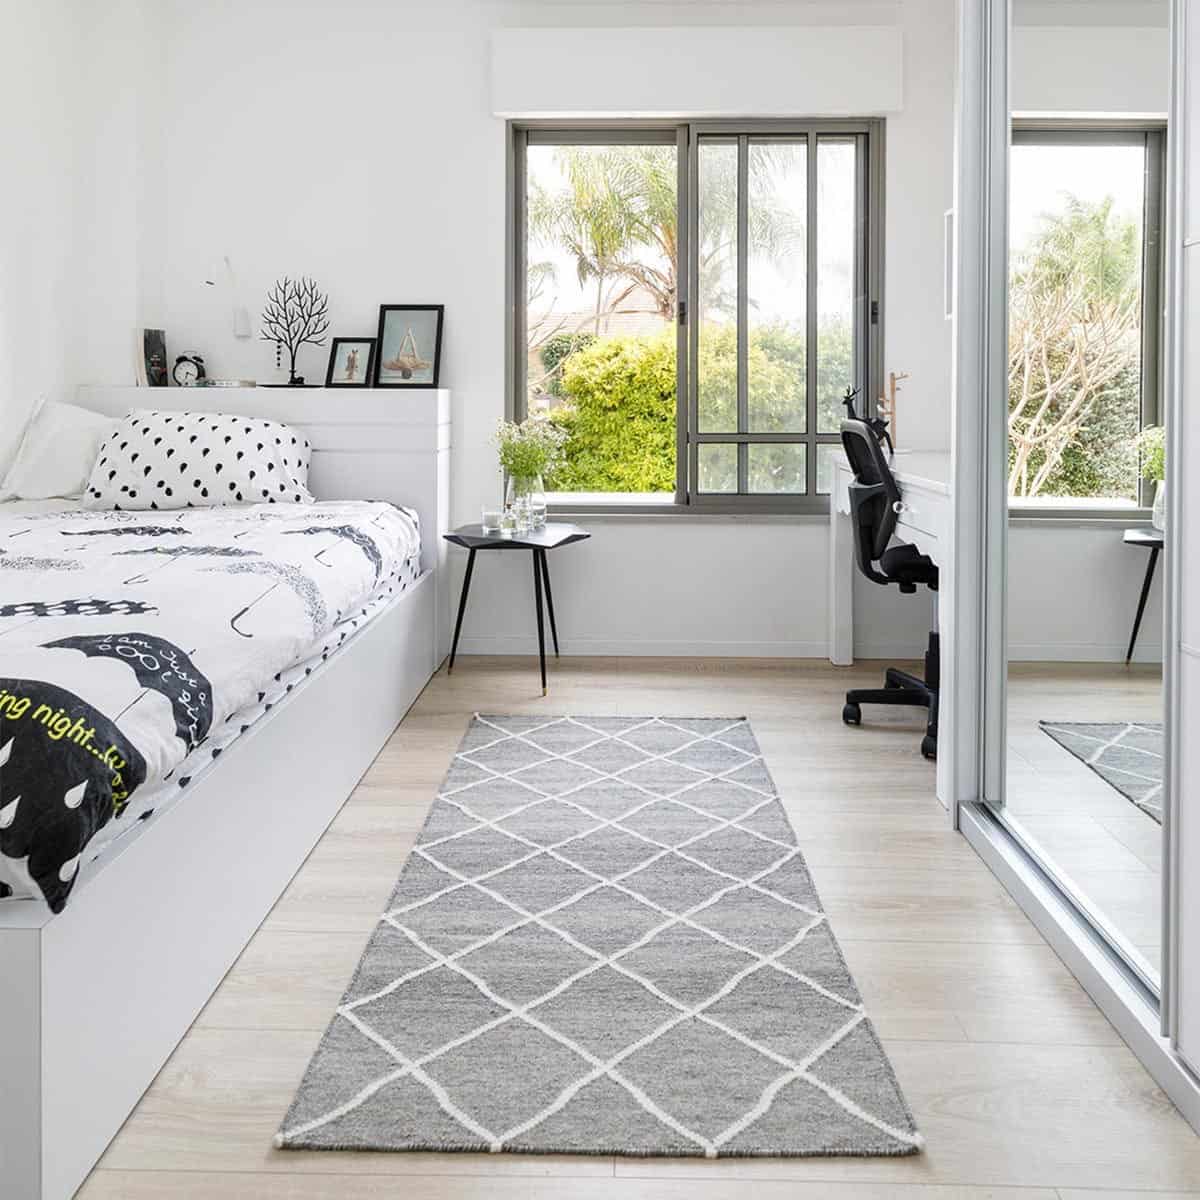 שטיח קילים שוהם 01 אפור בהיר ראנר עם פרנזים | השטיח האדום | עיצוב: מיכל גרינברג פוקס, צילום: אורית ארנון 